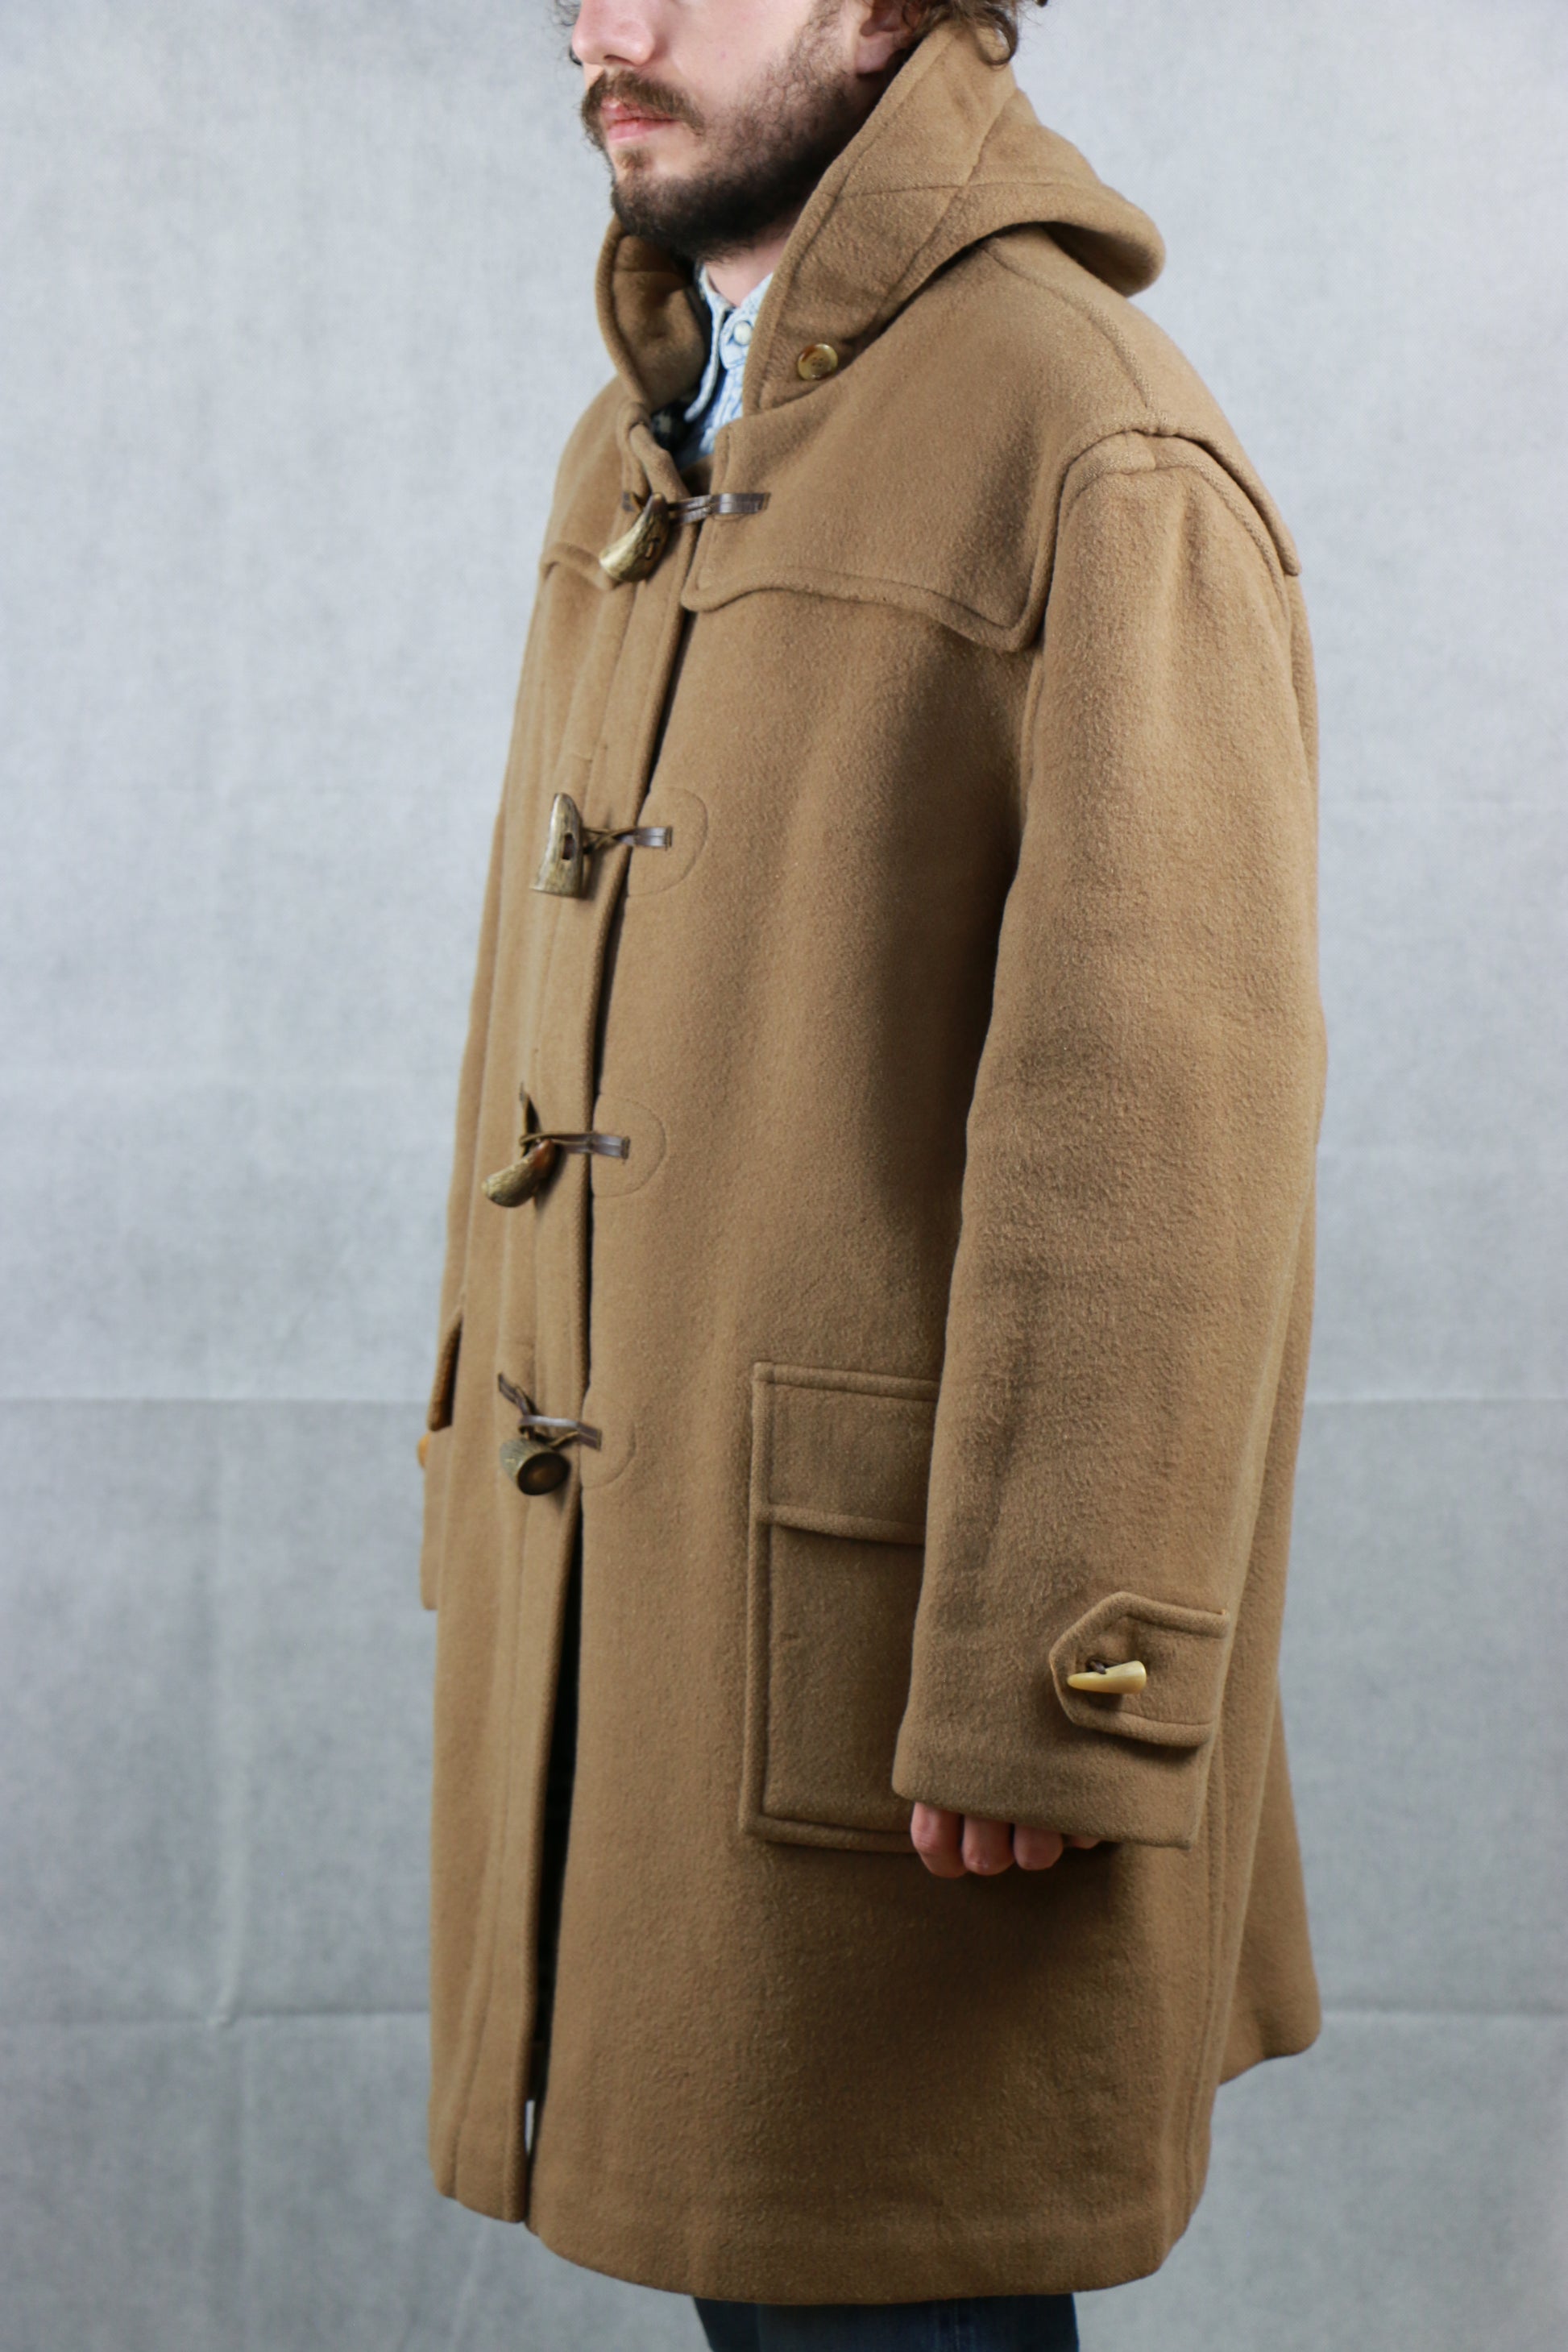 Arriba 77+ imagen burberry duffle coat vintage